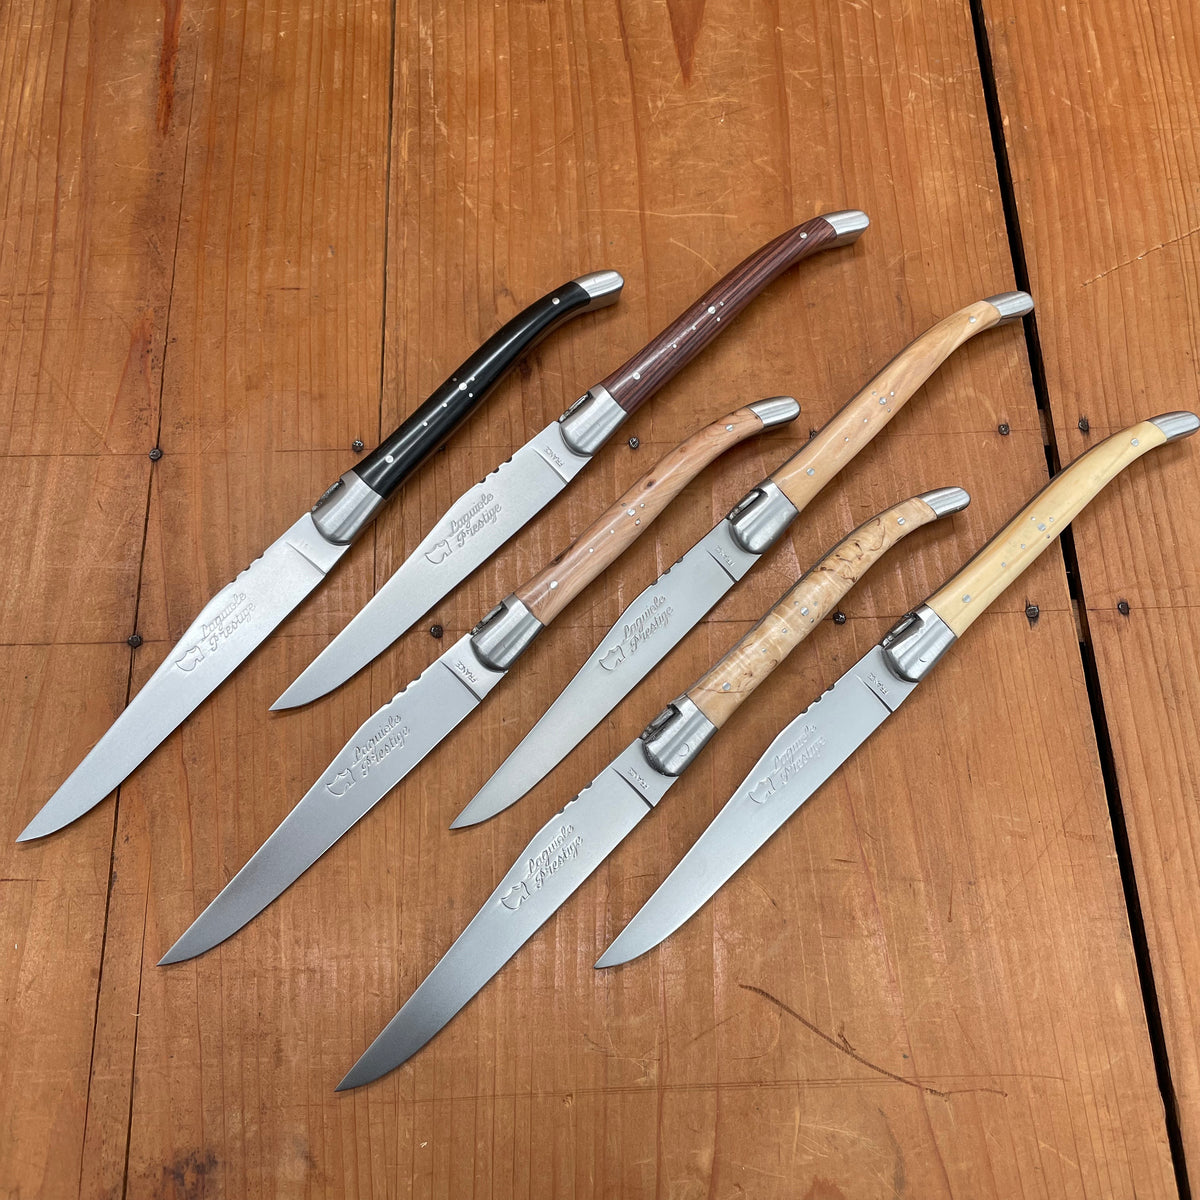 Au Sabot Laguiole Steak Knife Mixed Wood Handles with Oak Box - 6 Pieces